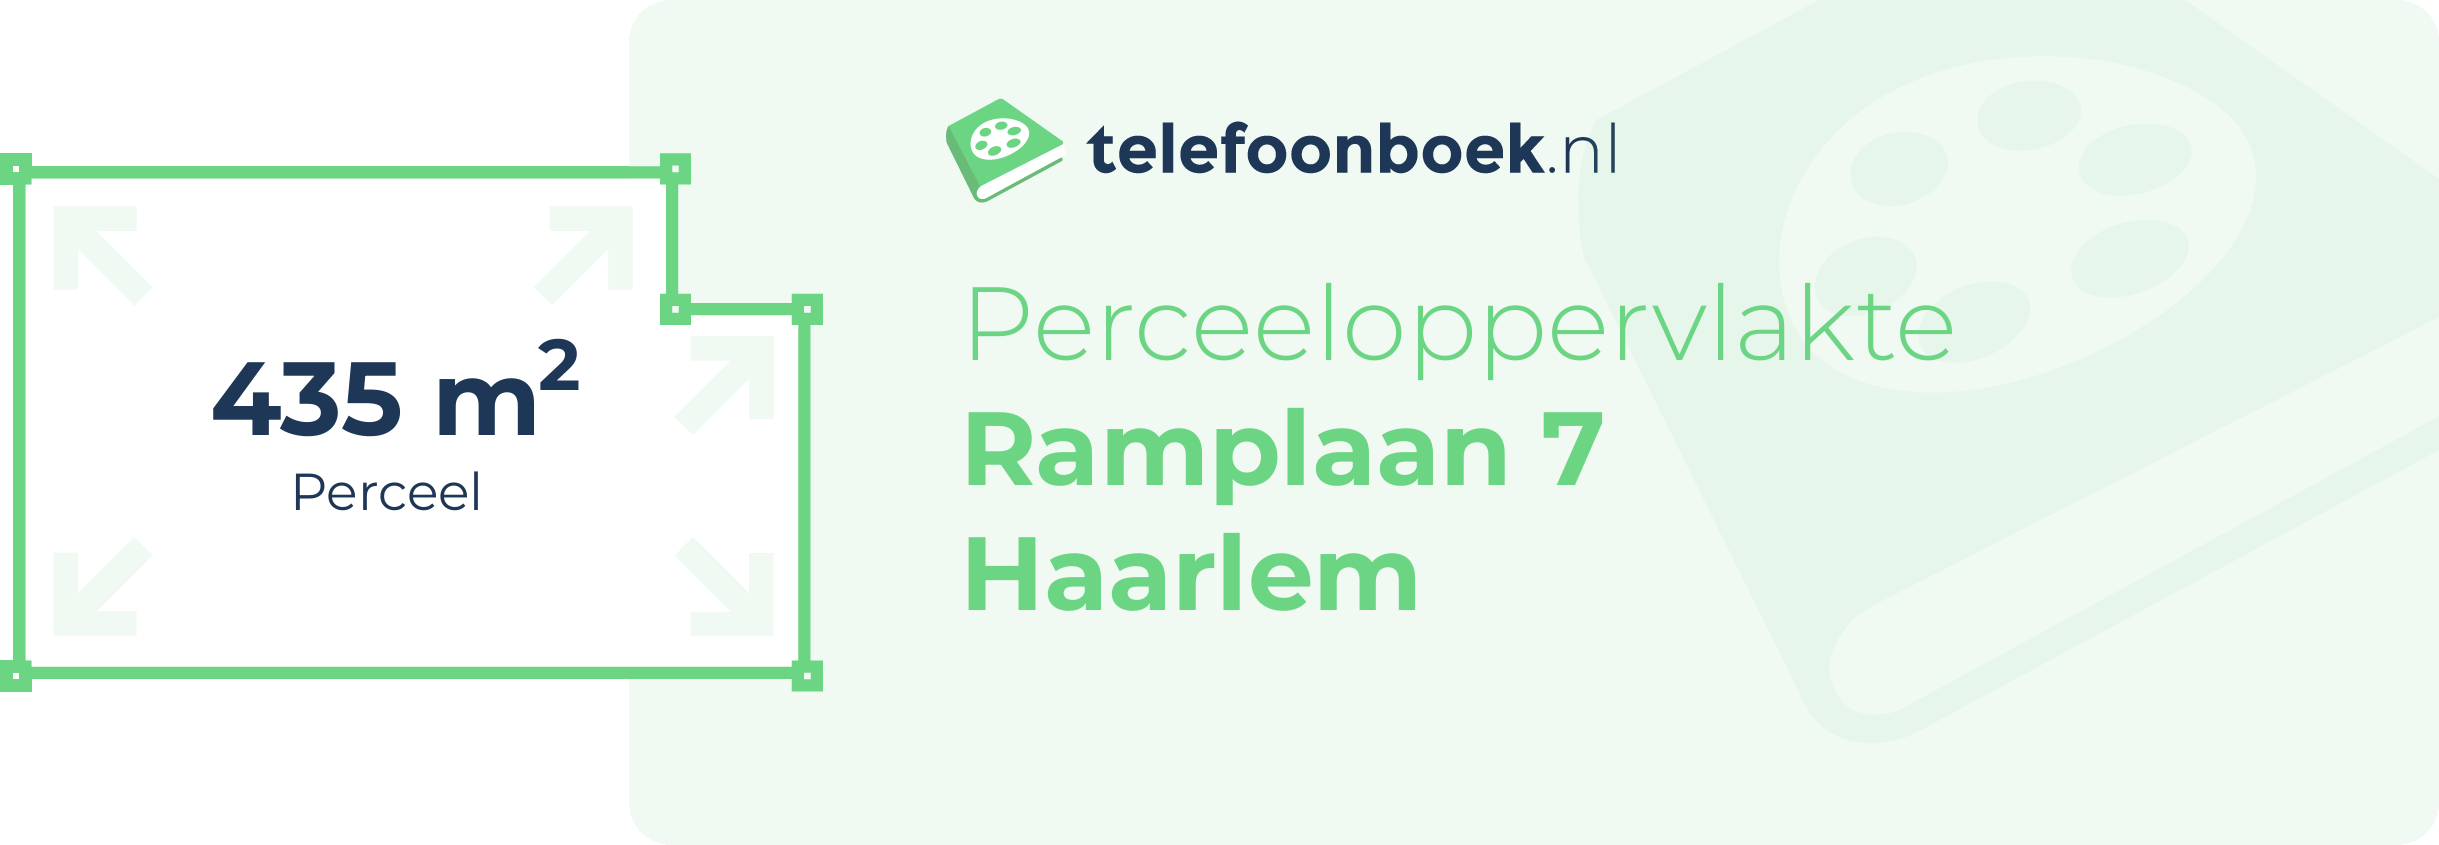 Perceeloppervlakte Ramplaan 7 Haarlem